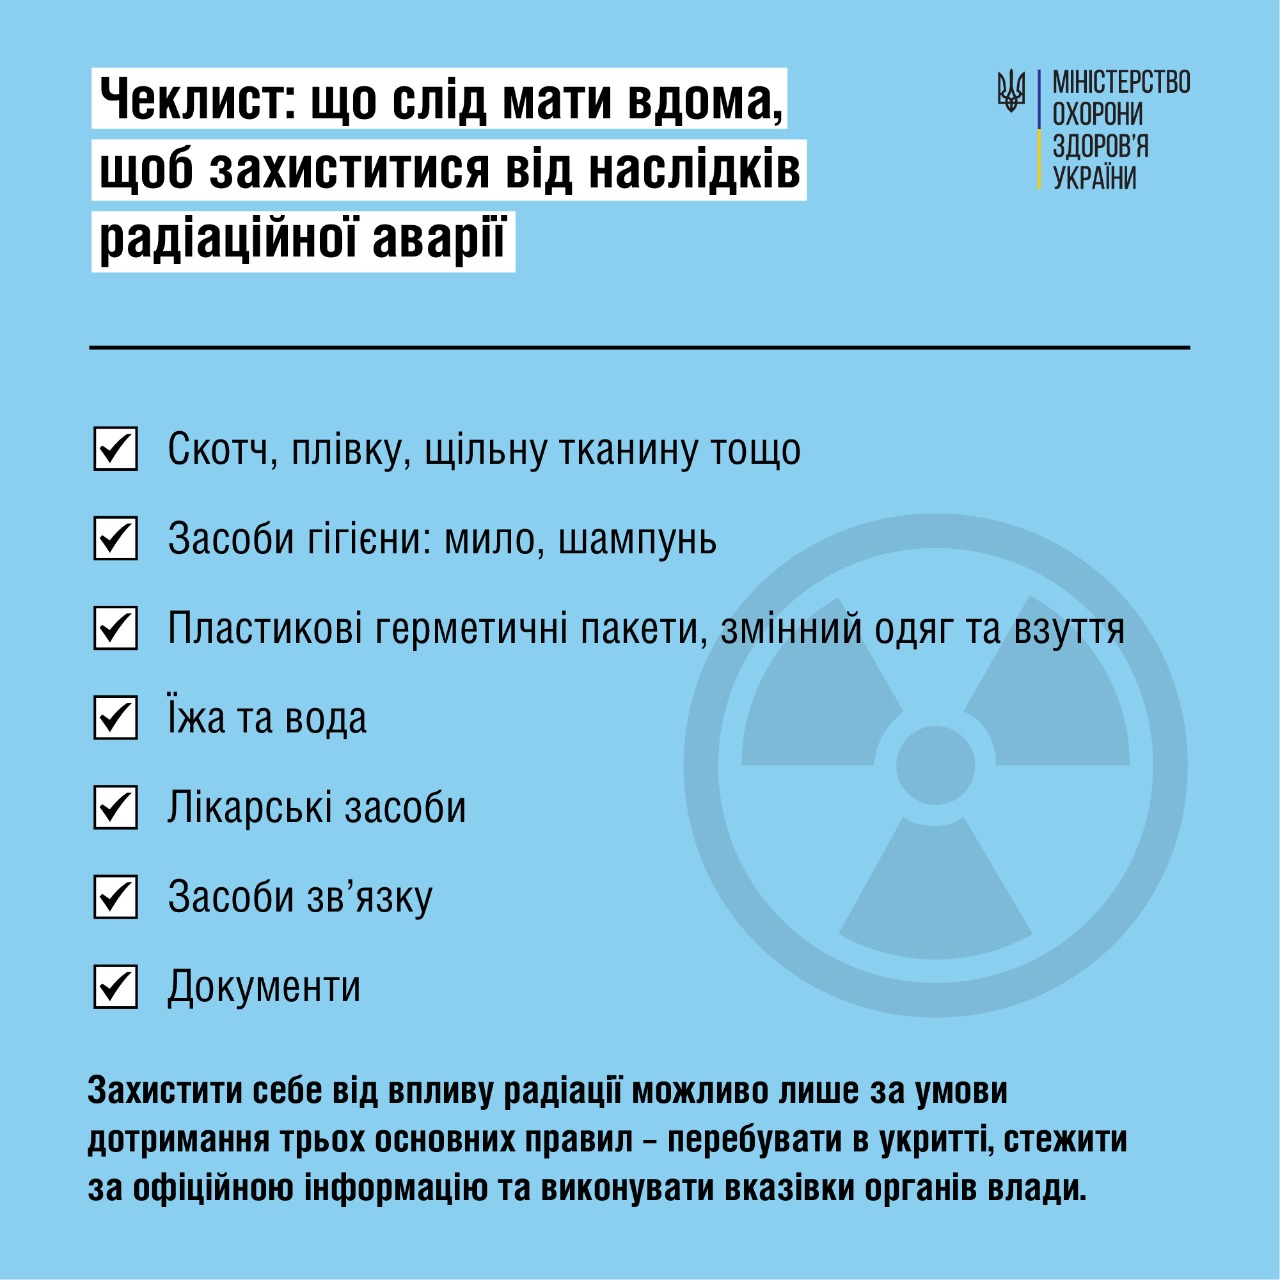 Как подготовиться к радиационной аварии: рекомендации Минздрав — фото 1